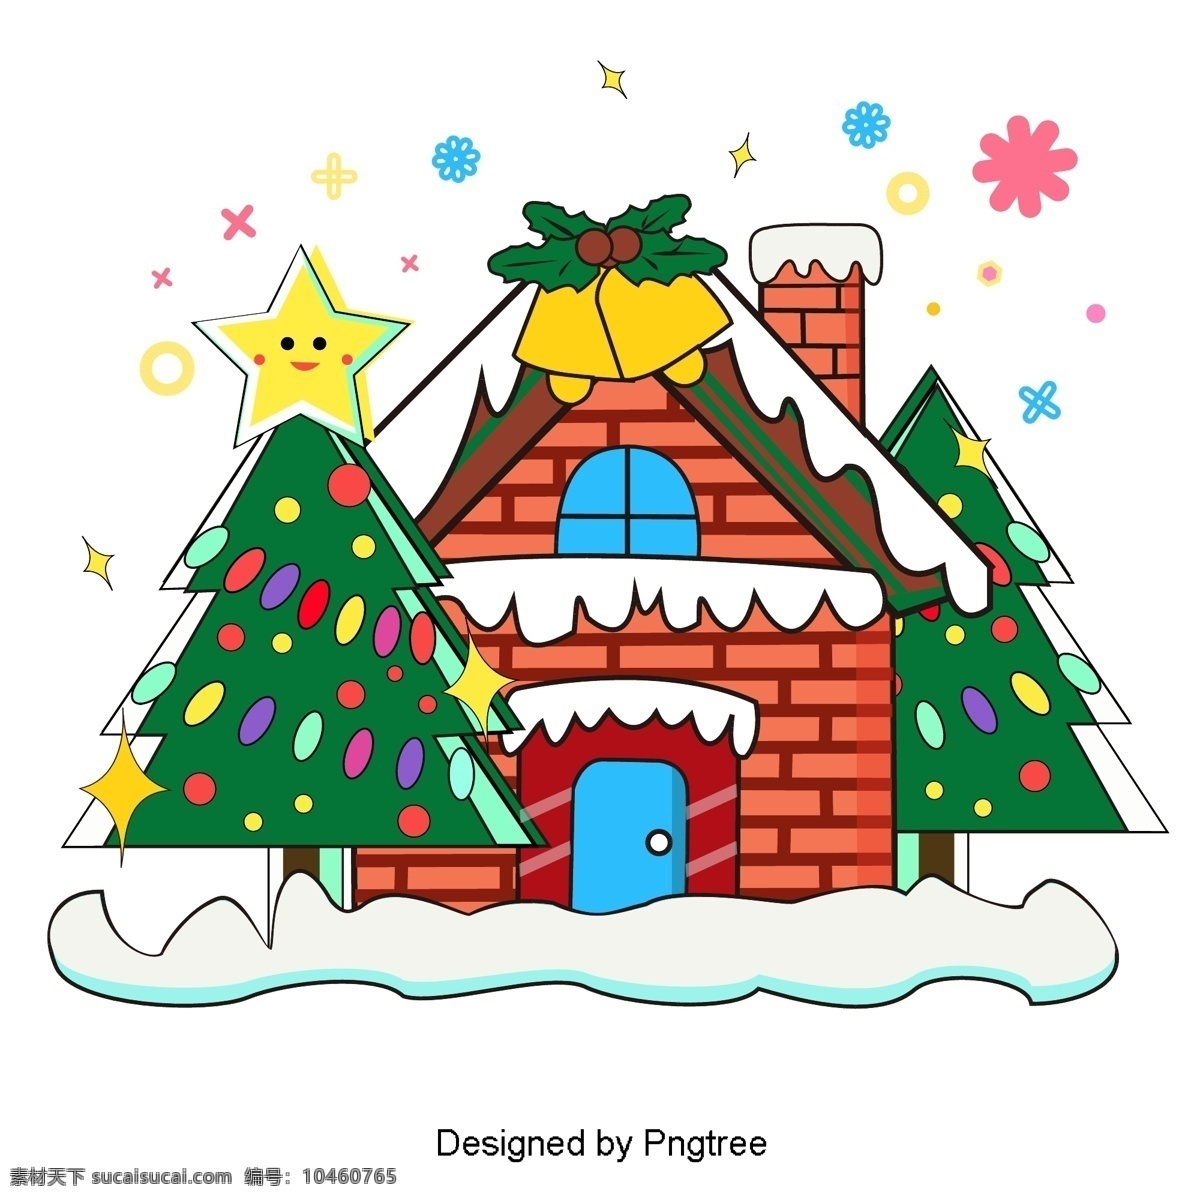 圣诞节 房子 雪 圣诞树 绿色 雪景 场景 圣诞 钟声 装饰品